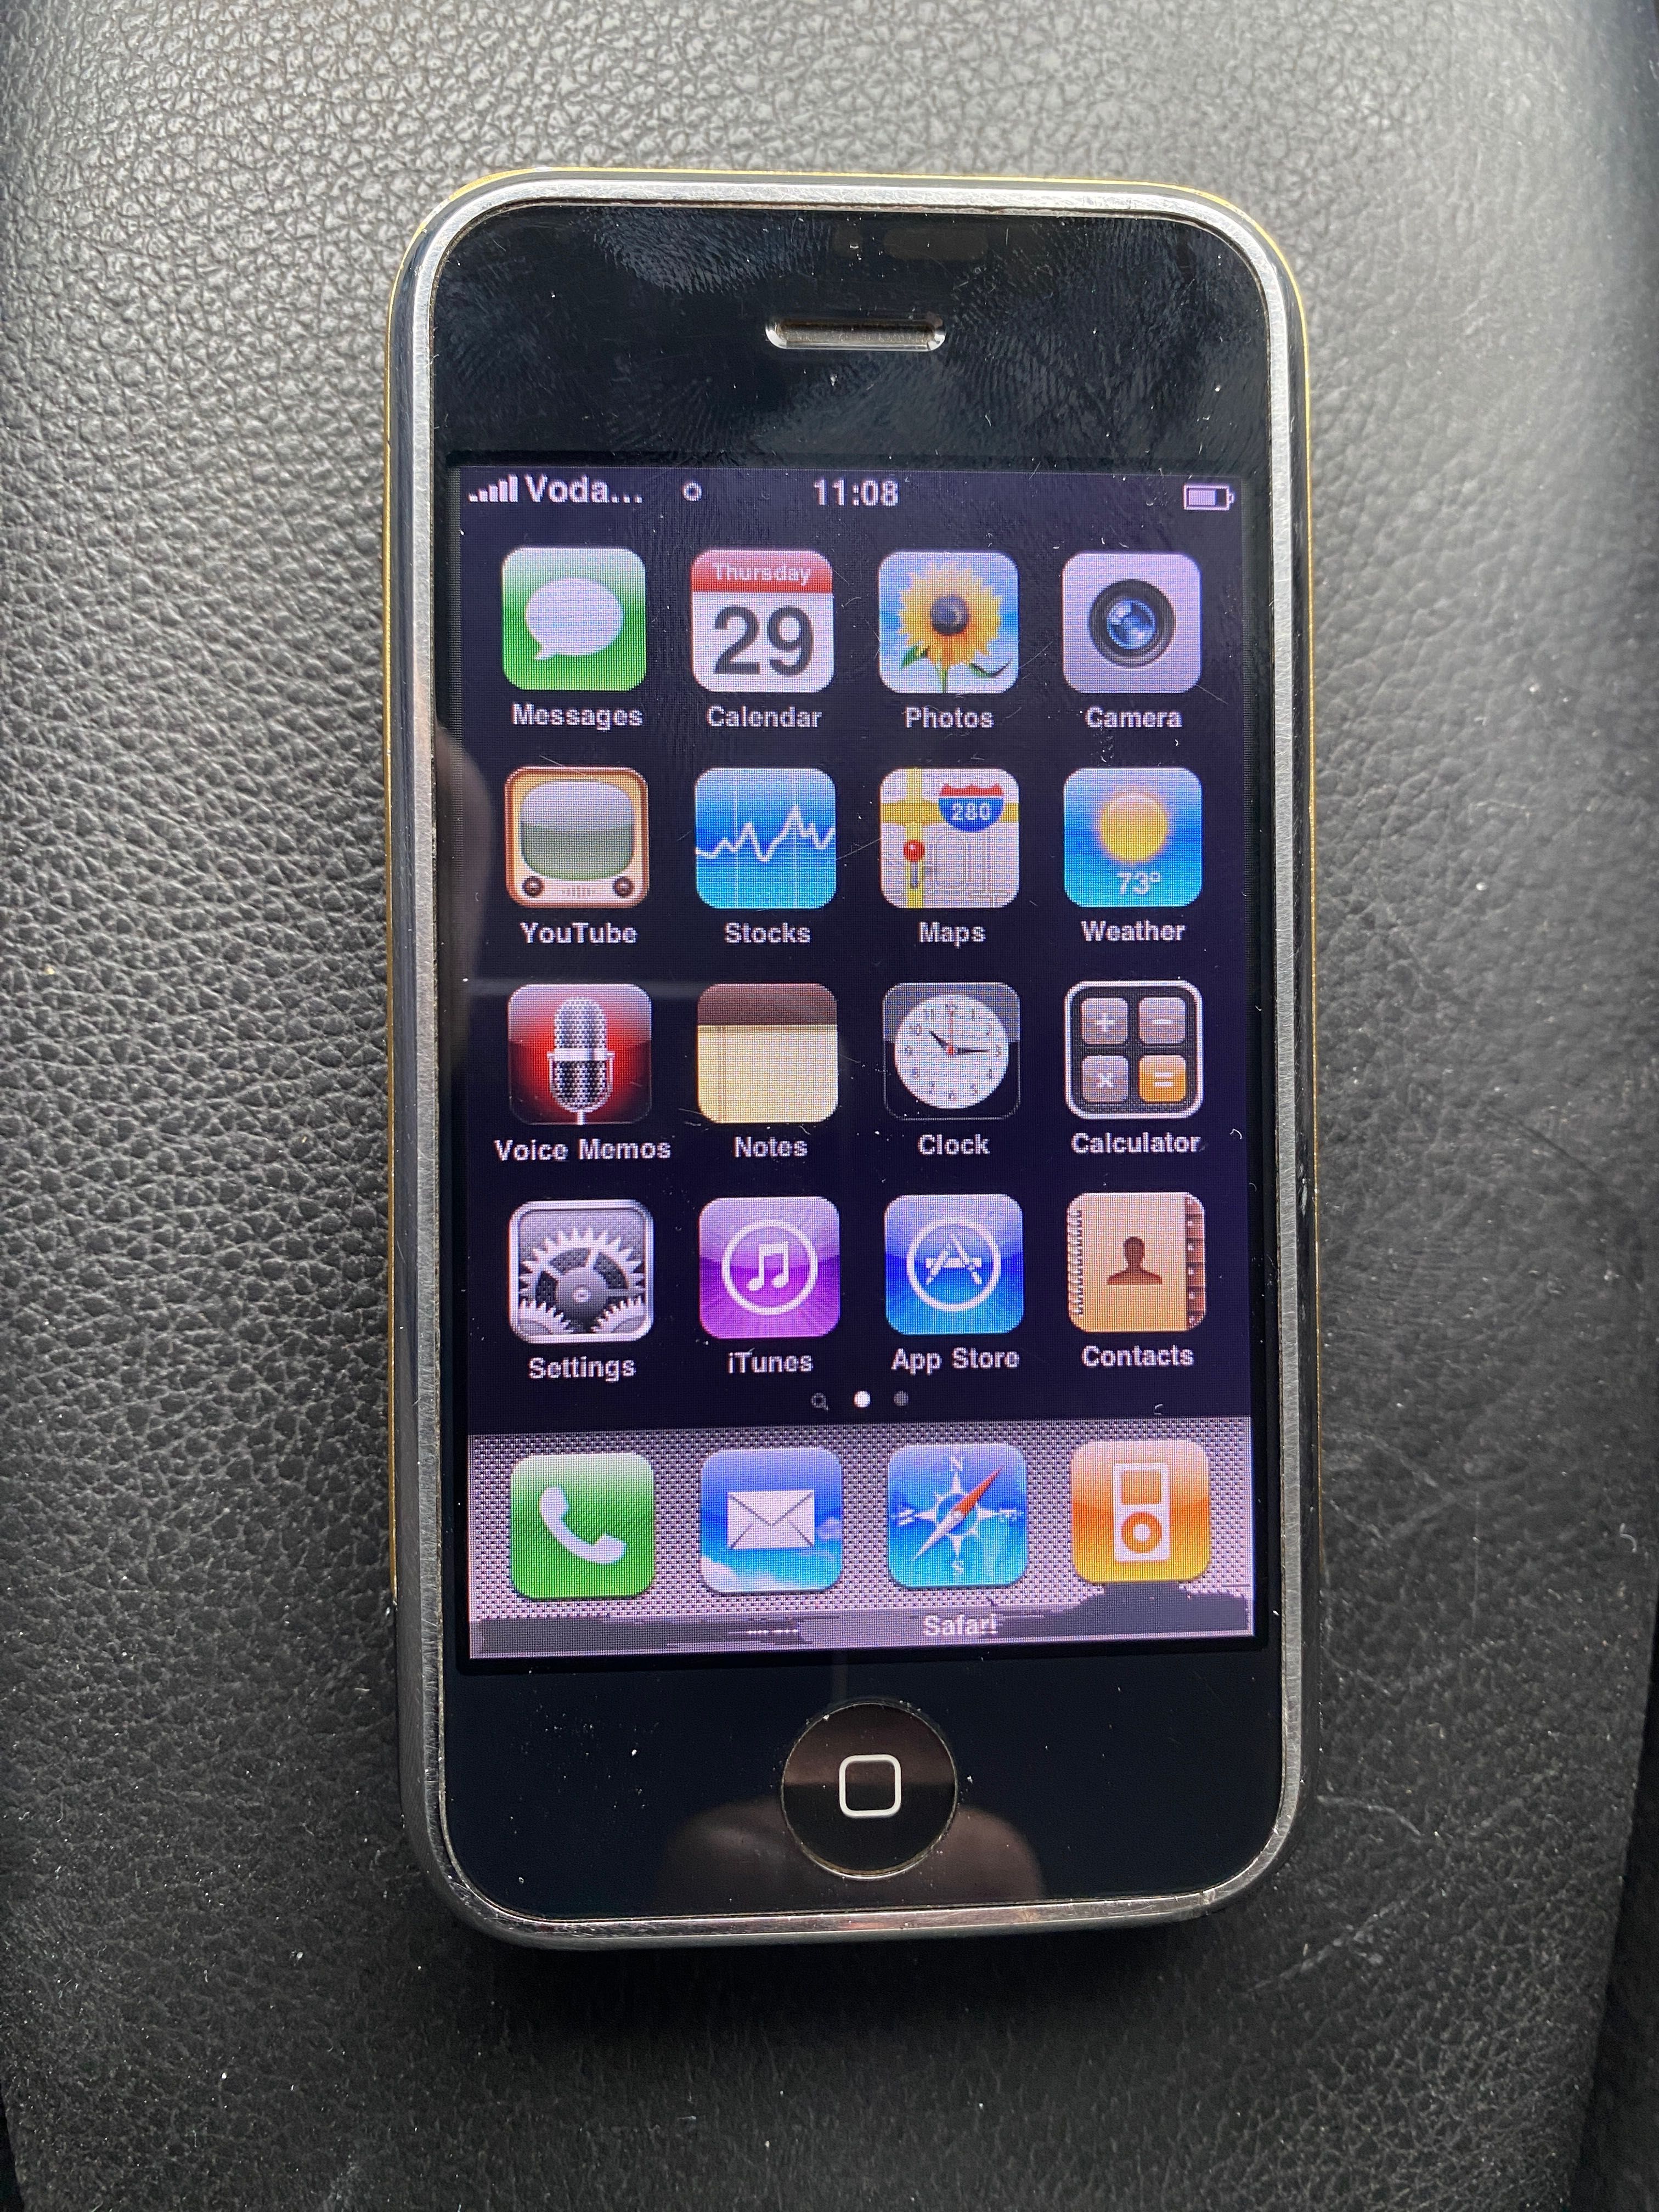 Vand iPhone 2G,primul iPhone